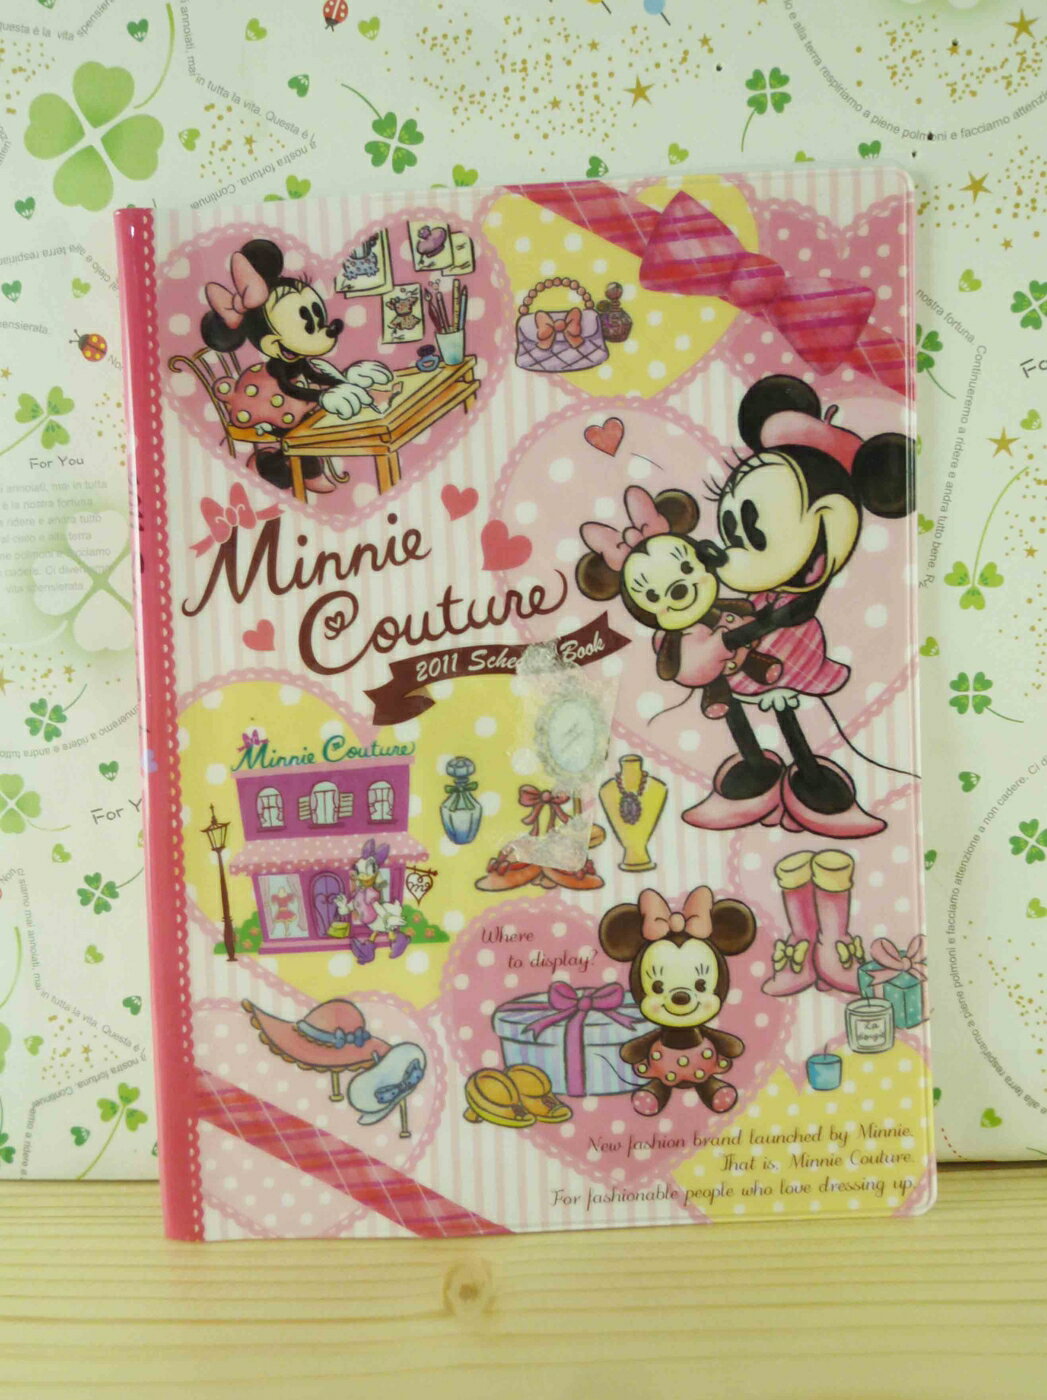 【震撼精品百貨】Micky Mouse 米奇/米妮 證件套-抱娃娃 震撼日式精品百貨